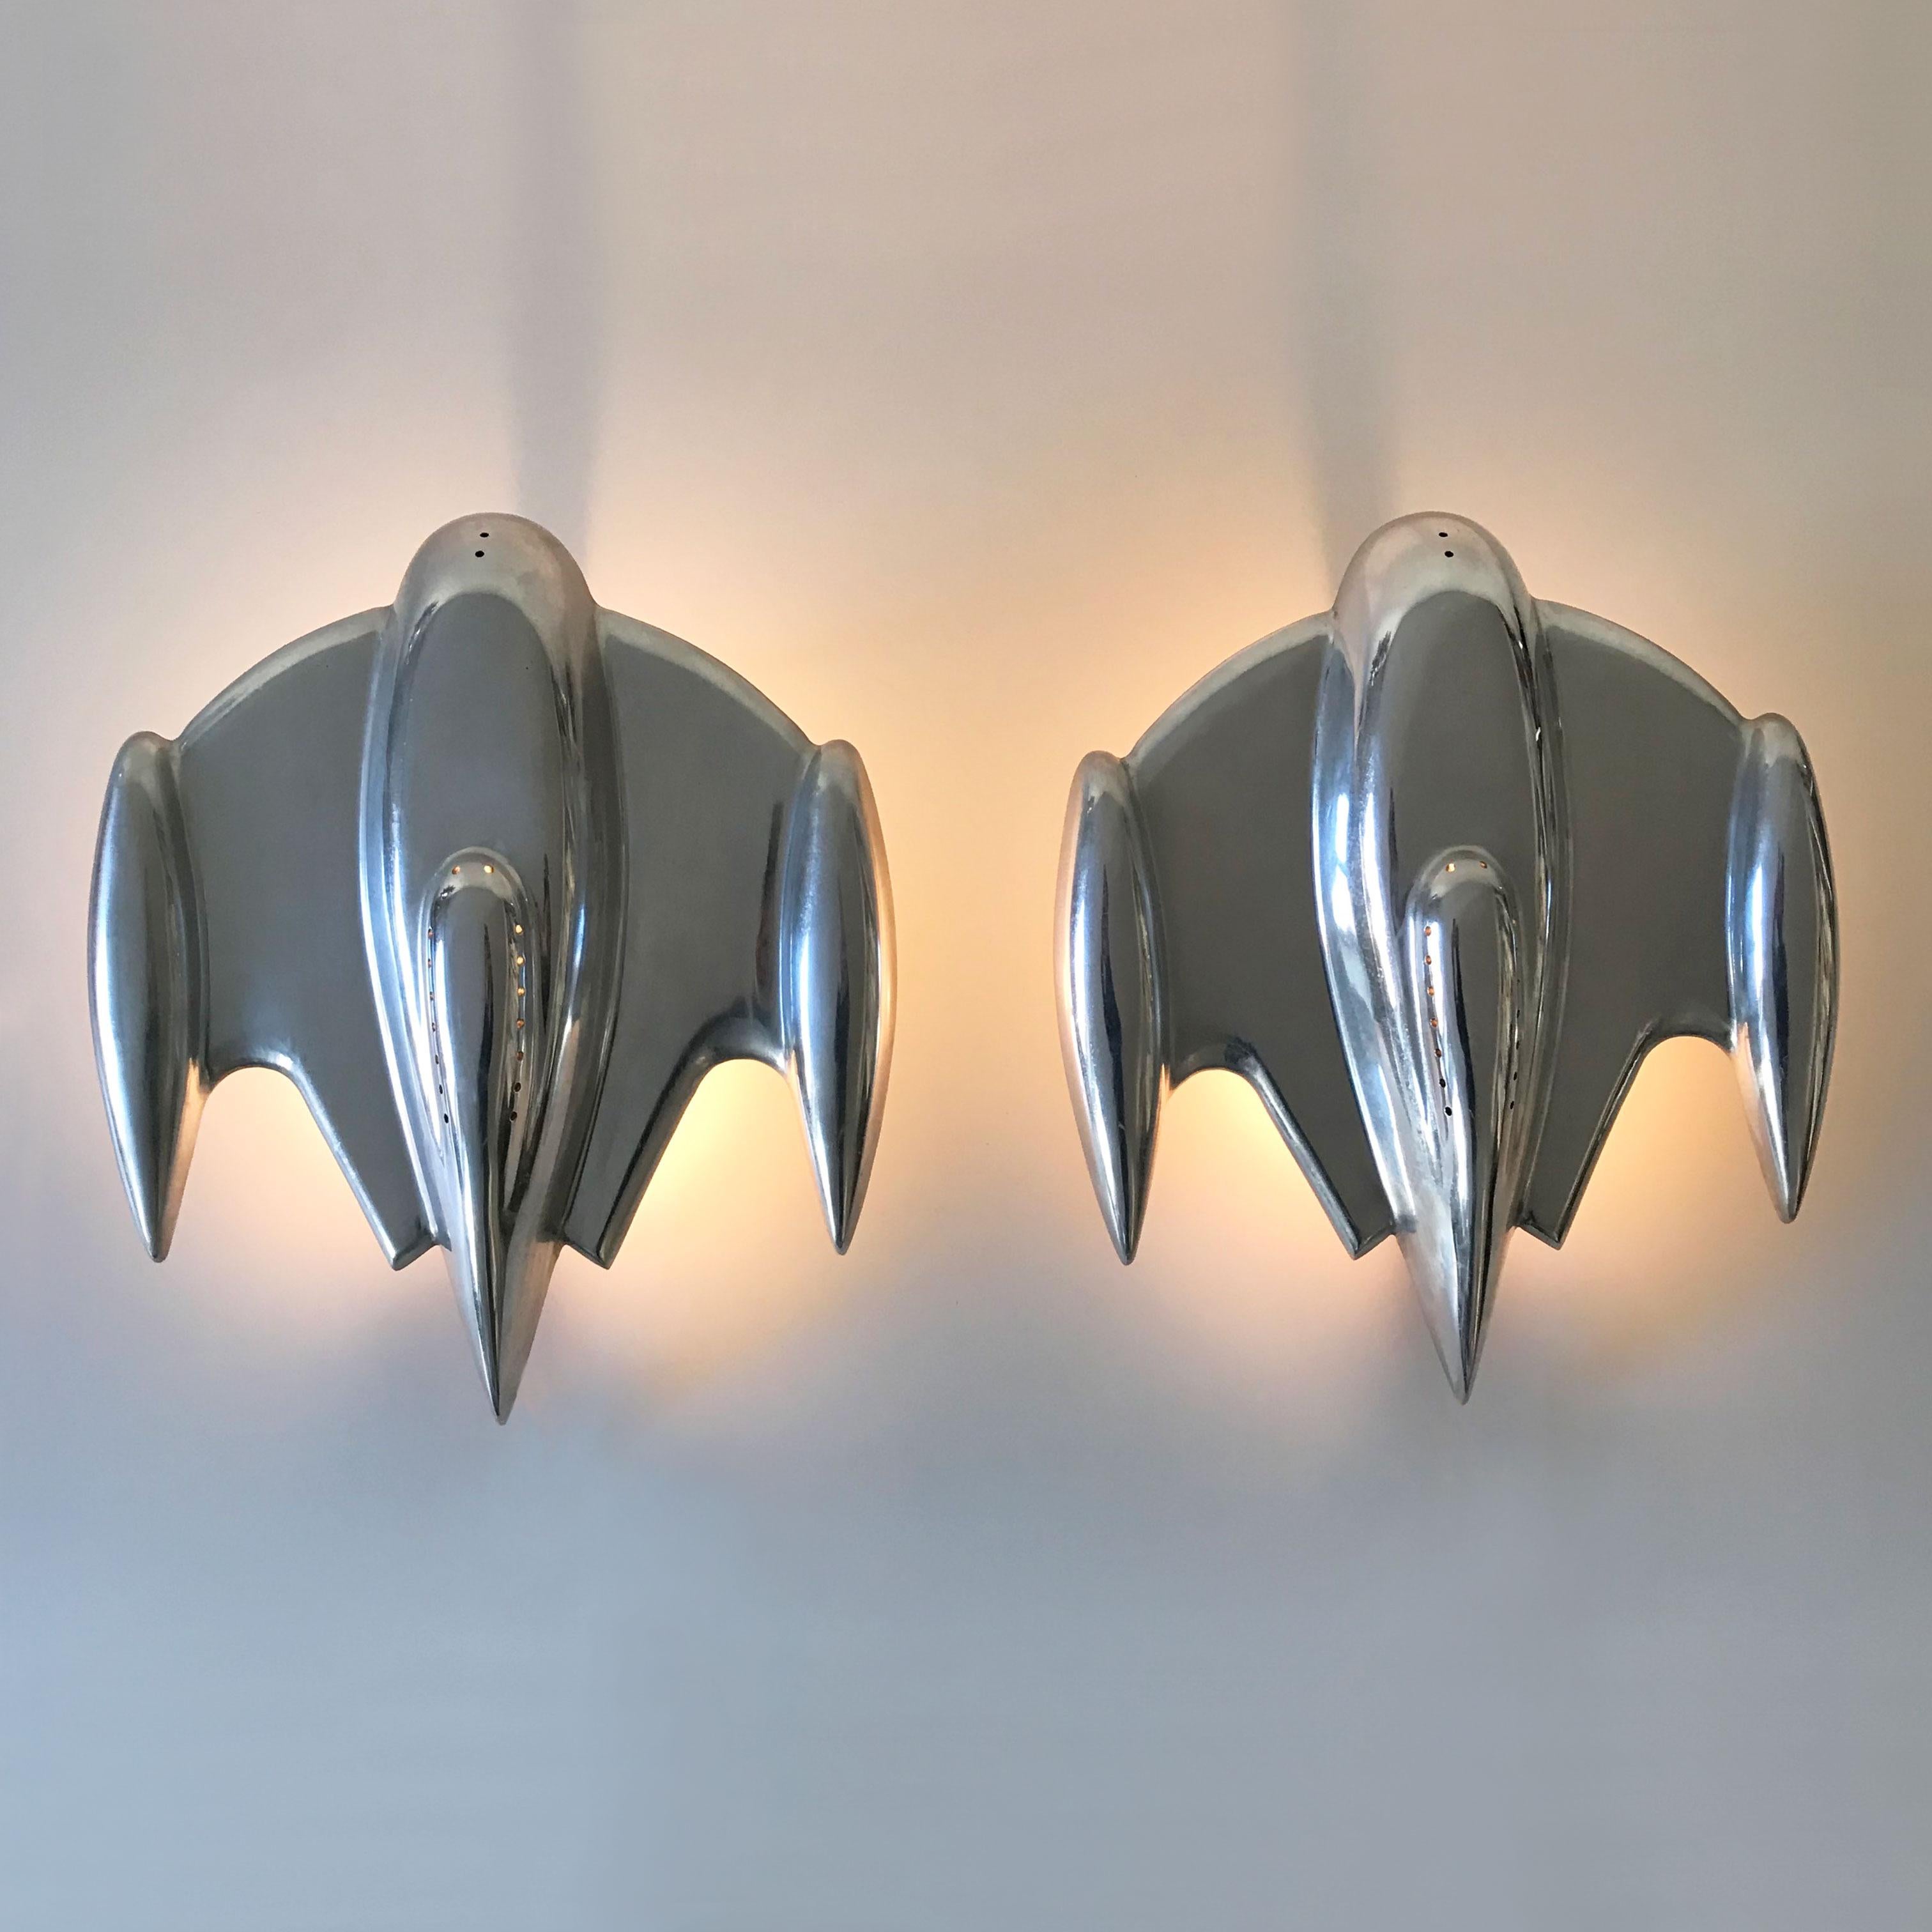 Satz von zwei erstaunlich großen Sputnik Wandlampen / Wandleuchter in Form von Raumschiffen. Wahrscheinlich 1990er Jahre, Frankreich.

Jede Leuchte ist aus Aluminiumguss gefertigt und benötigt 1 x E27 Edison-Schraubenglühbirne. Lieferung ohne